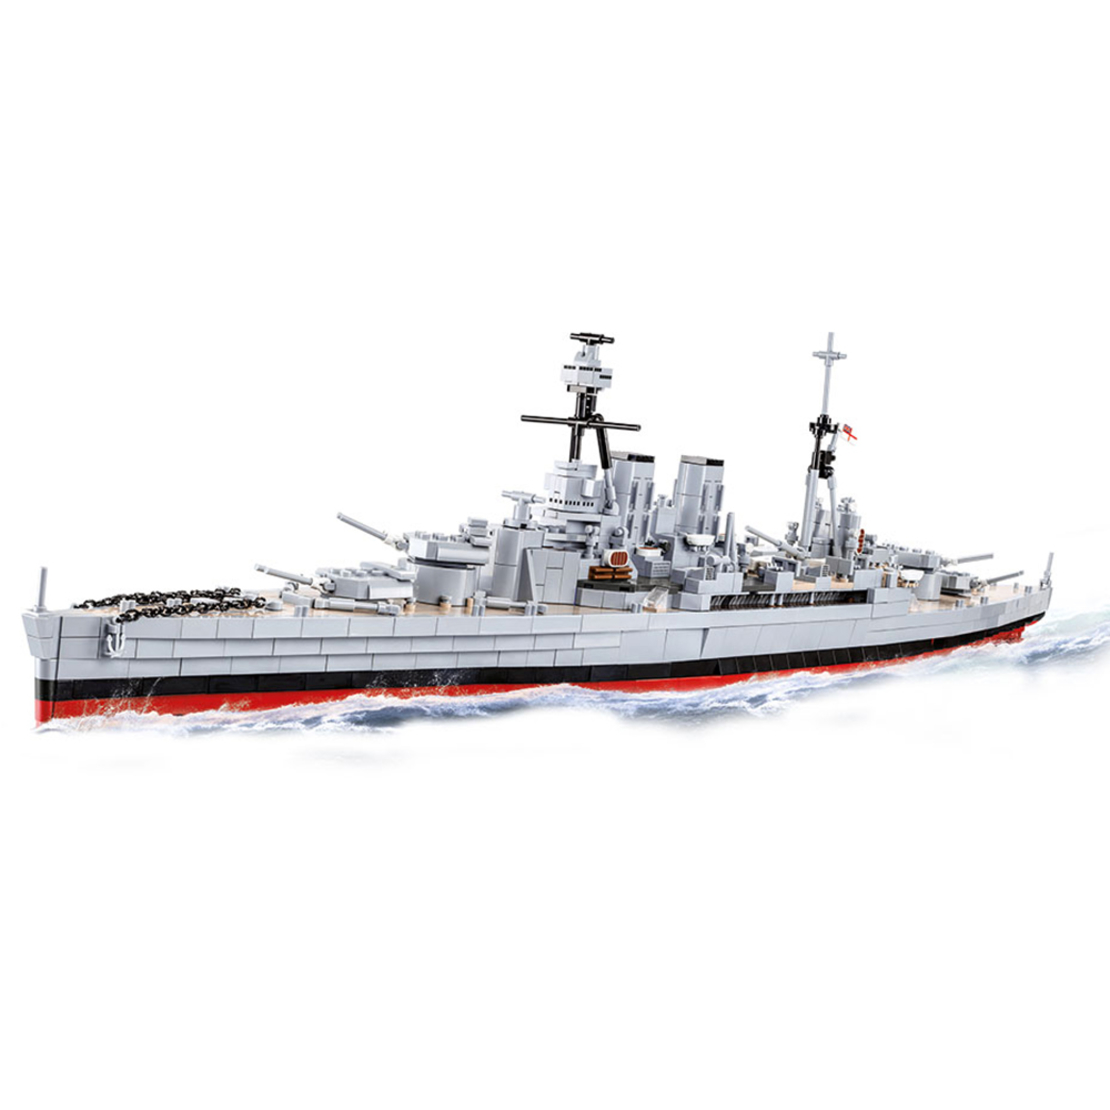 אוניית המלחמה HMS הוד